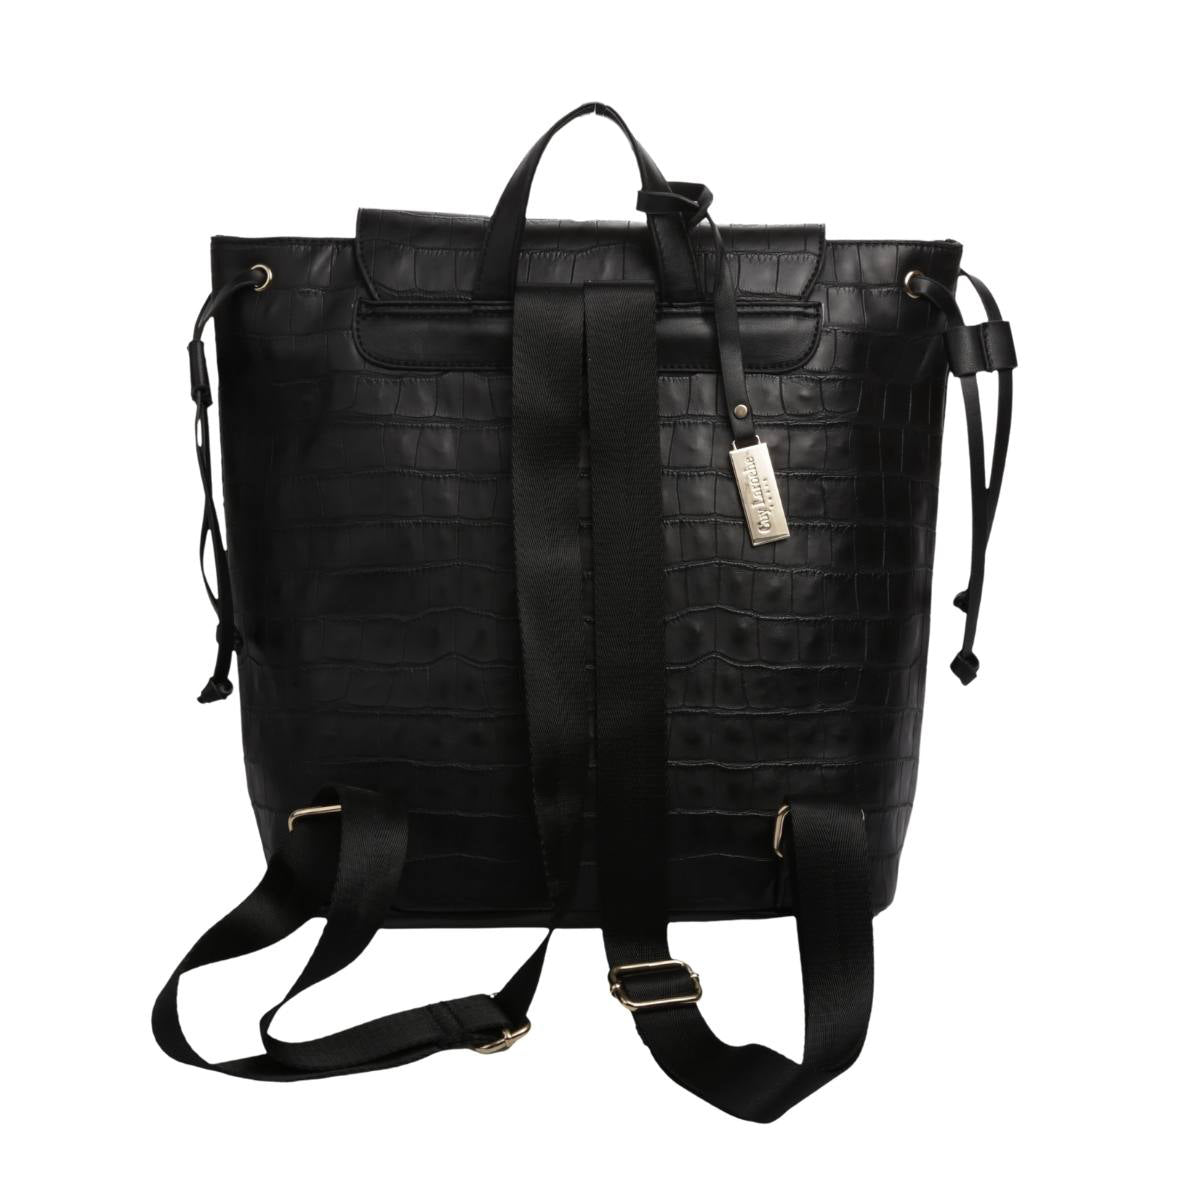 Backpack [Guy Laroche] con diseño animal print estilo piel de cocodrilo con broche frontal color negro